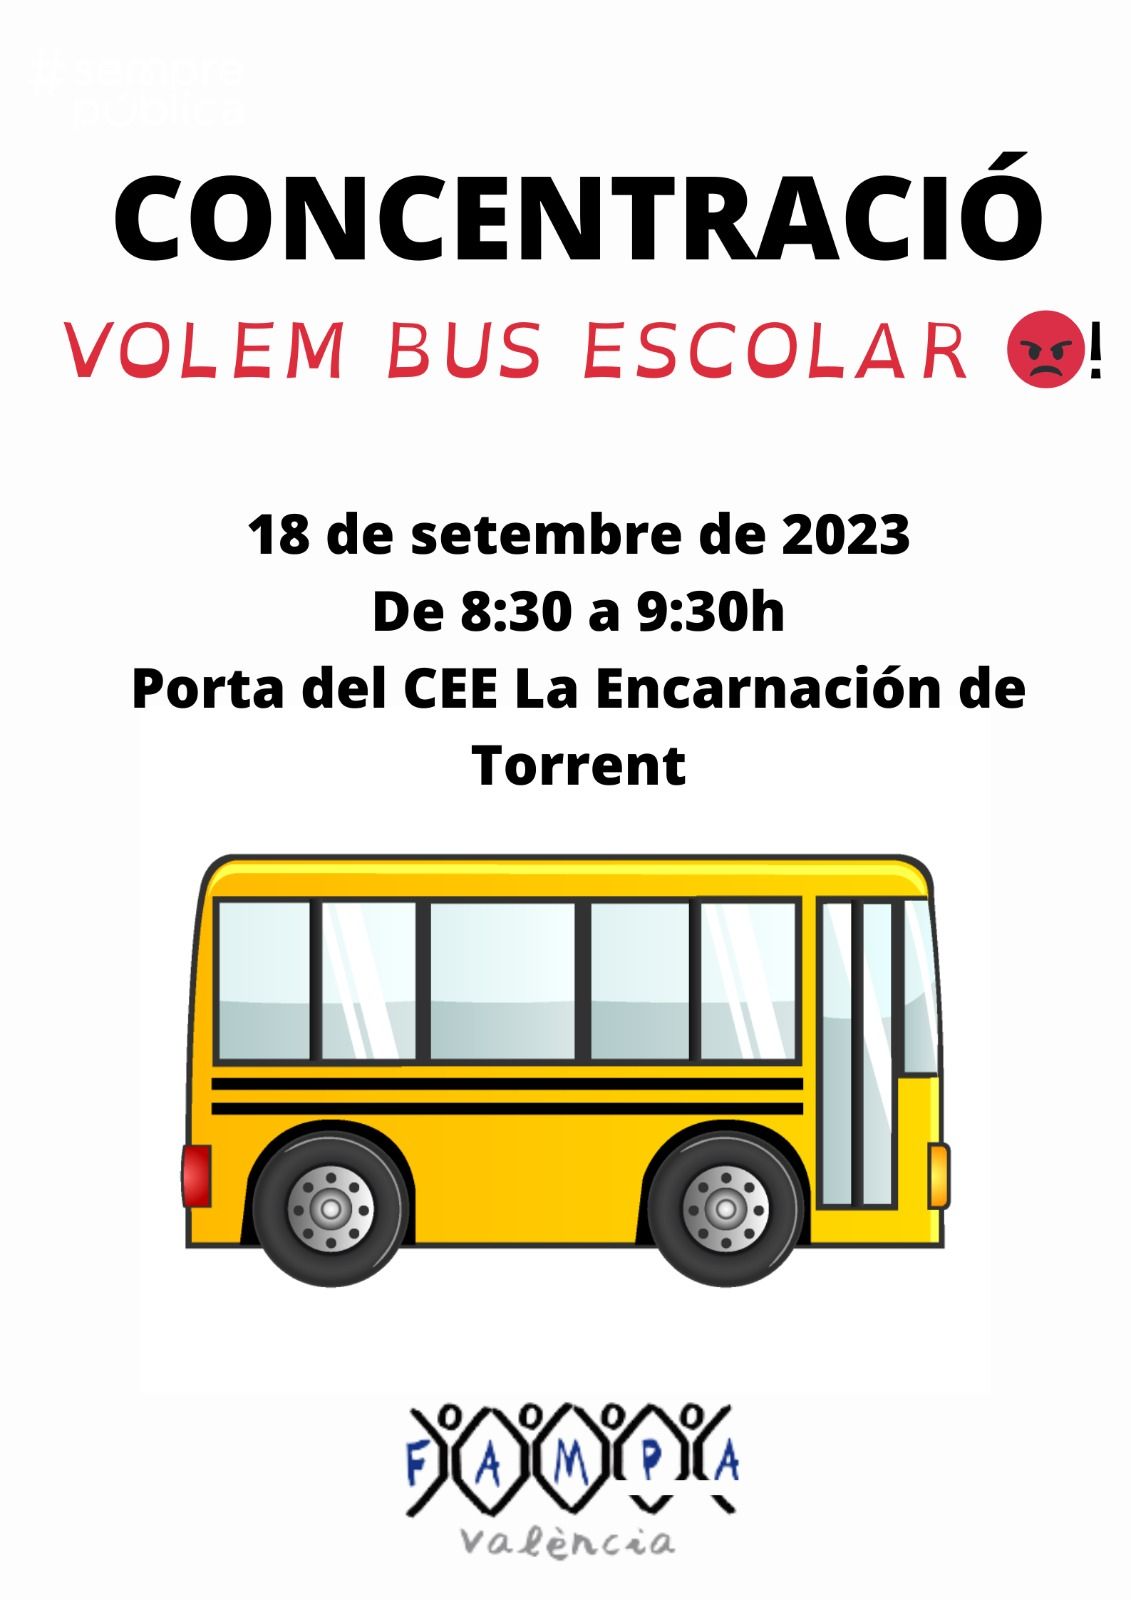 VUELTA AL COLE | El bus vuelve a dejar tirado a los alumnos de Torrent